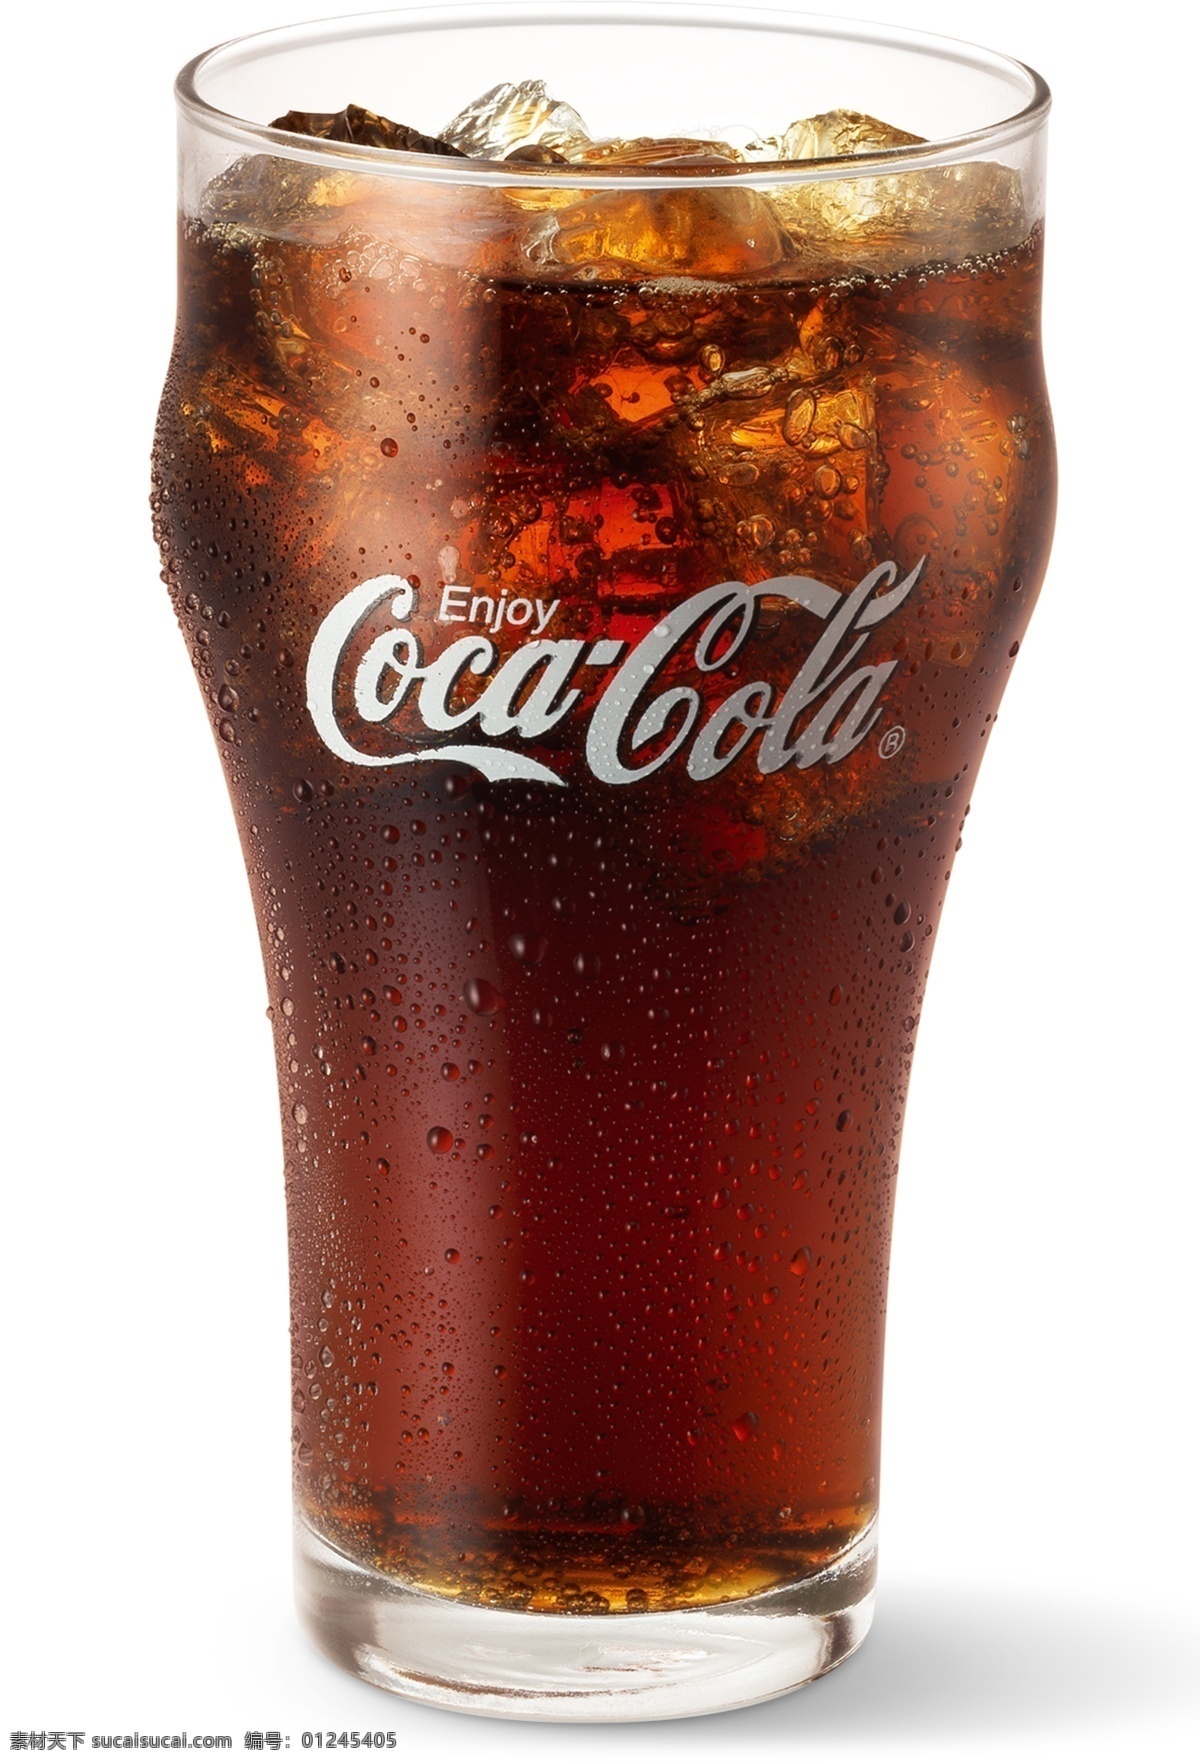 可乐素材 可乐 可乐广告 汽水 饮料 可乐周边 可口 碳酸饮料 玻璃瓶 易拉罐 cola 二氧化碳 可乐瓶 可乐杯